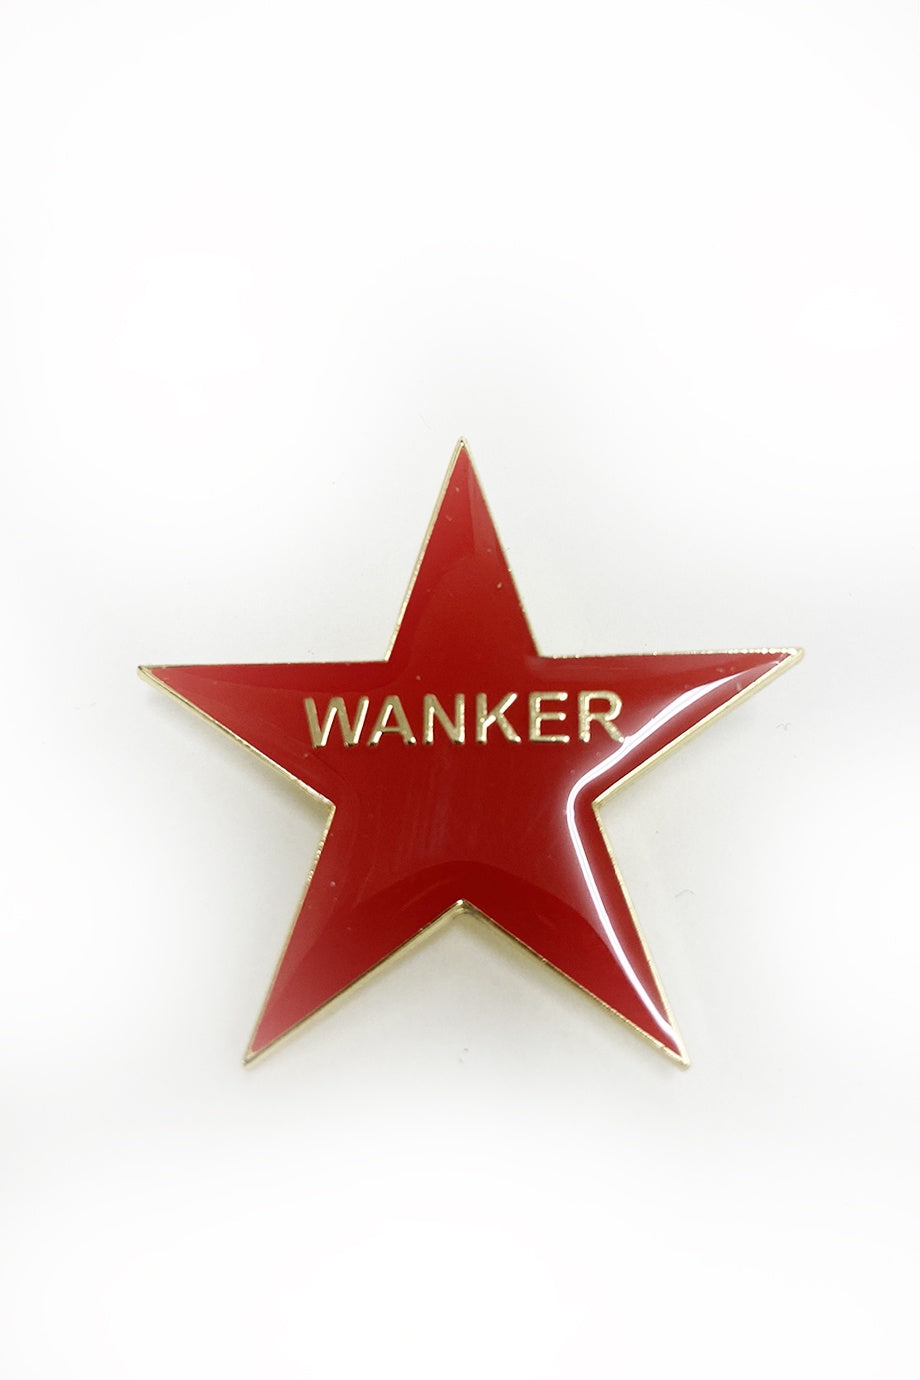 WORLD Enamel Badge - WANKER